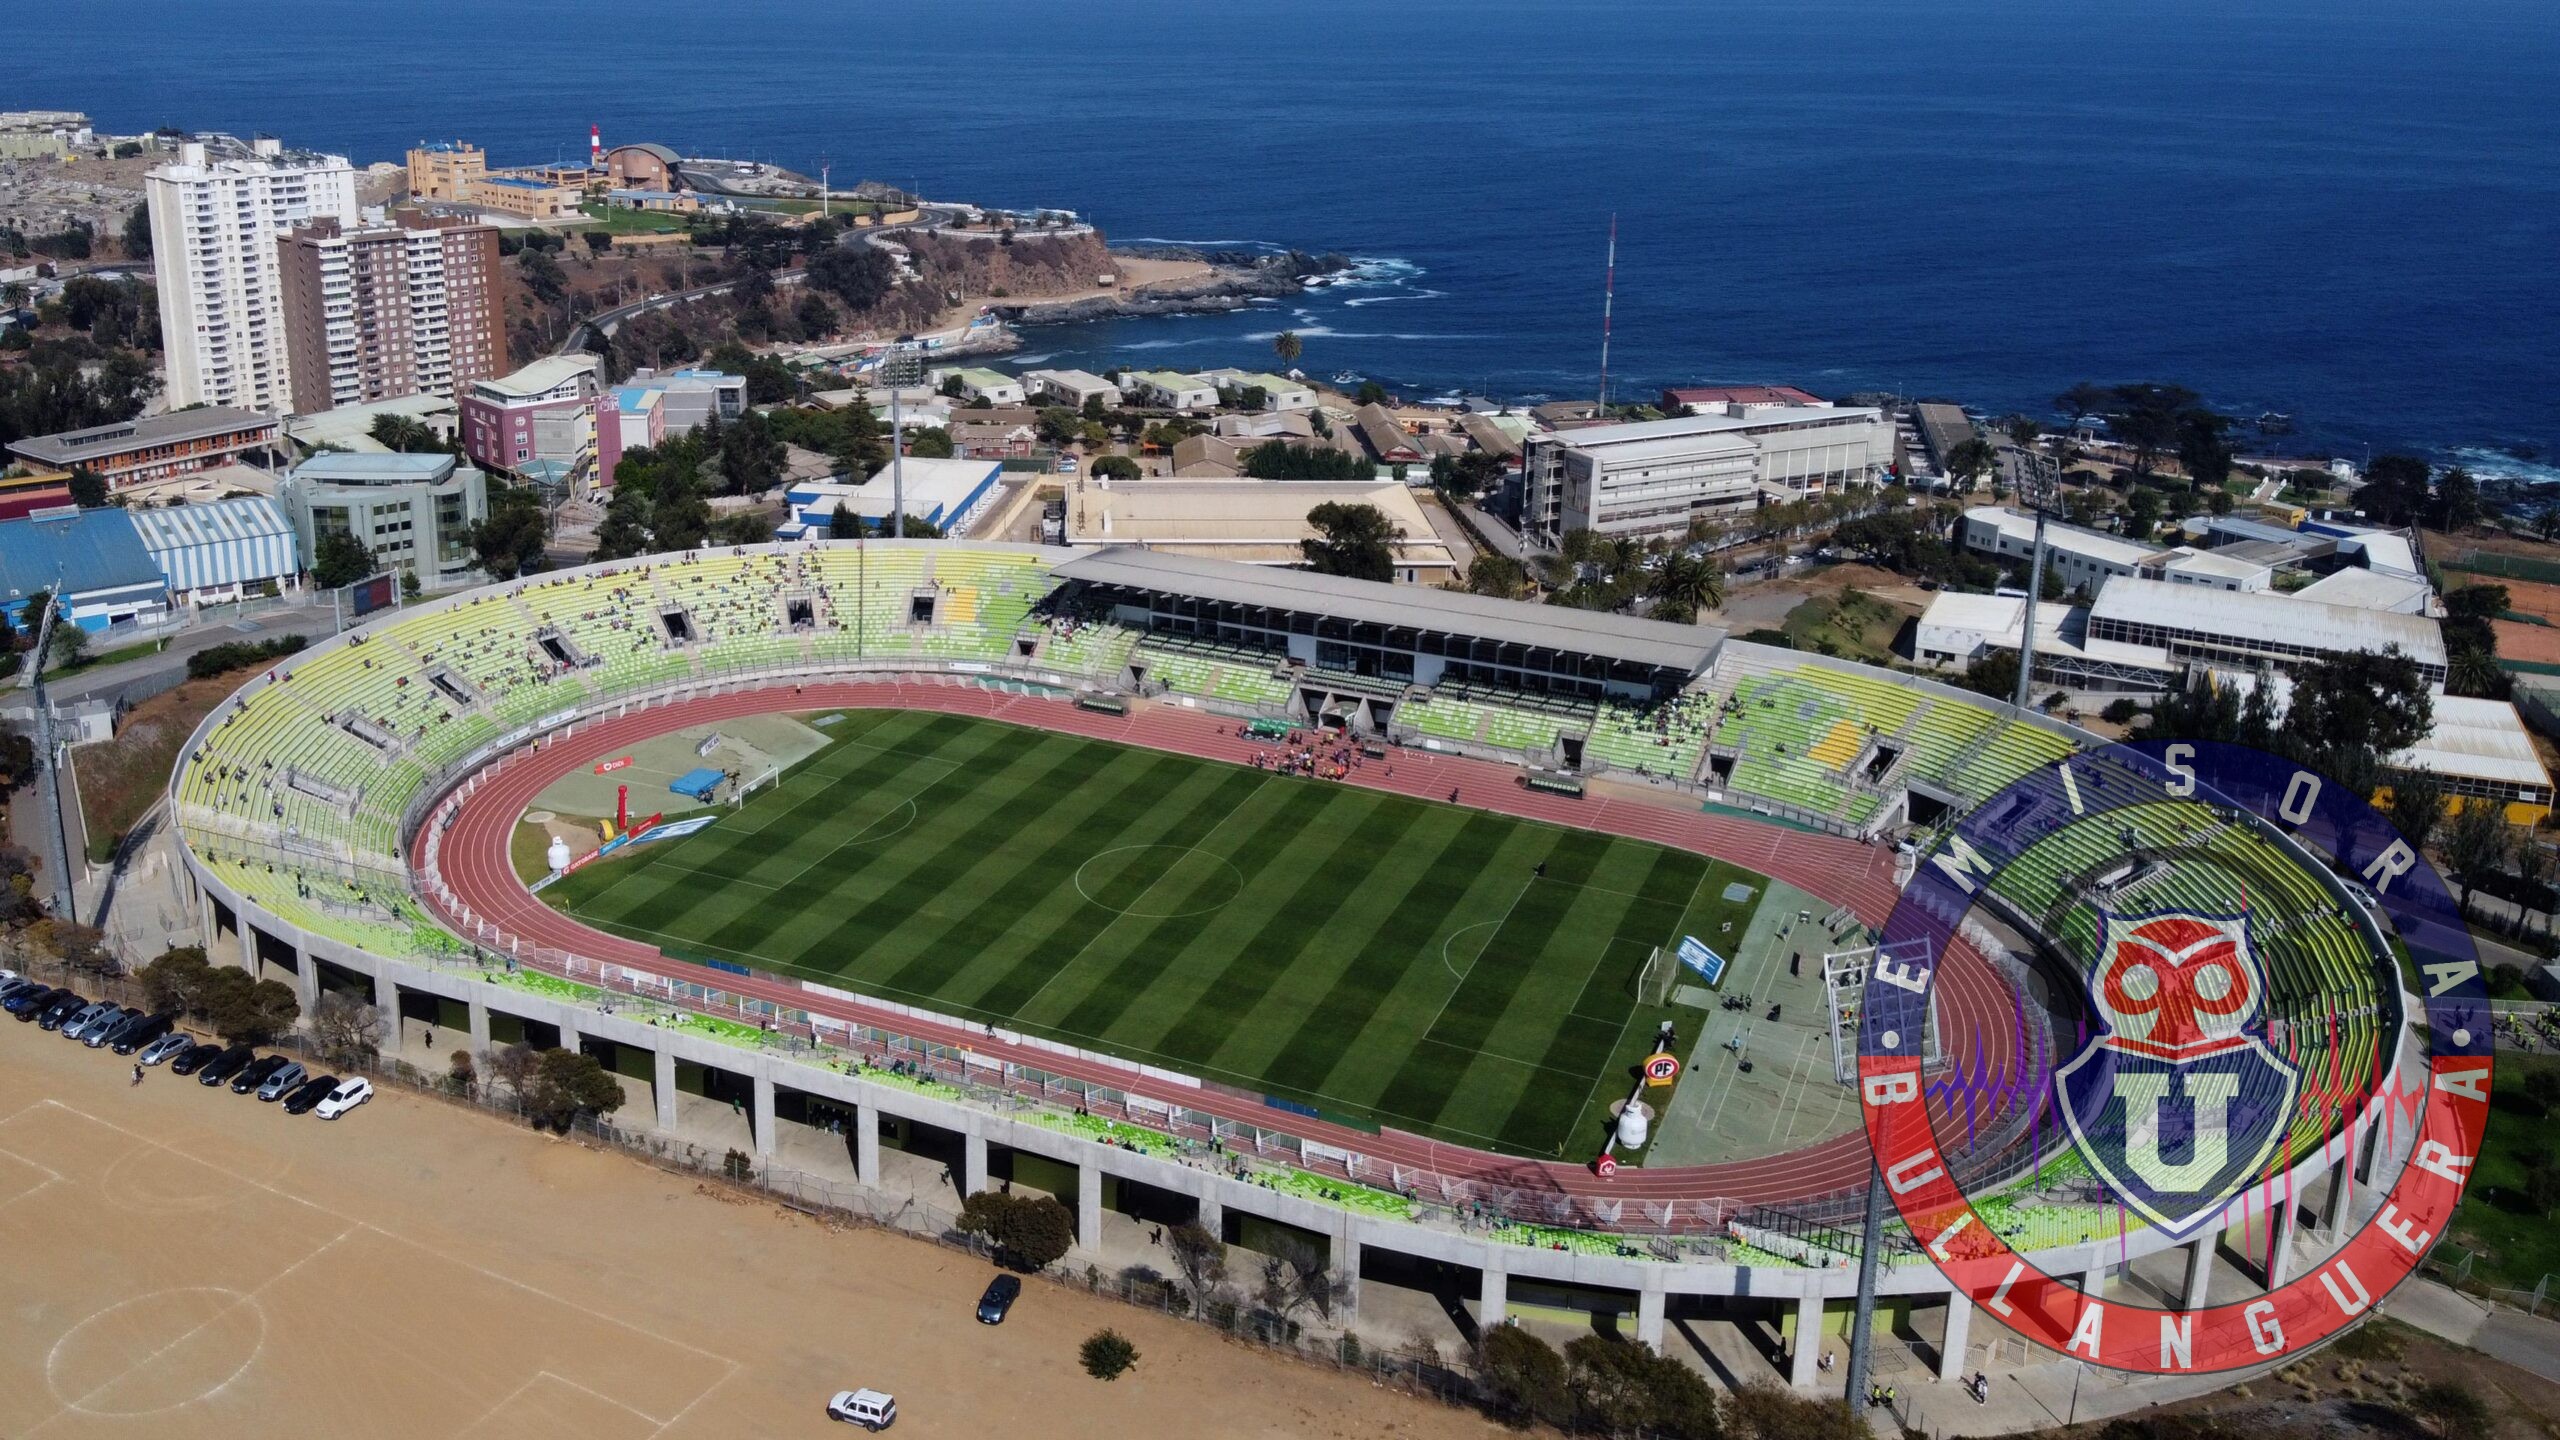 En la U aprueban el estadio Elías Figueroa para recibir a Deportes Iquique: “Me gusta mucho esa cancha”